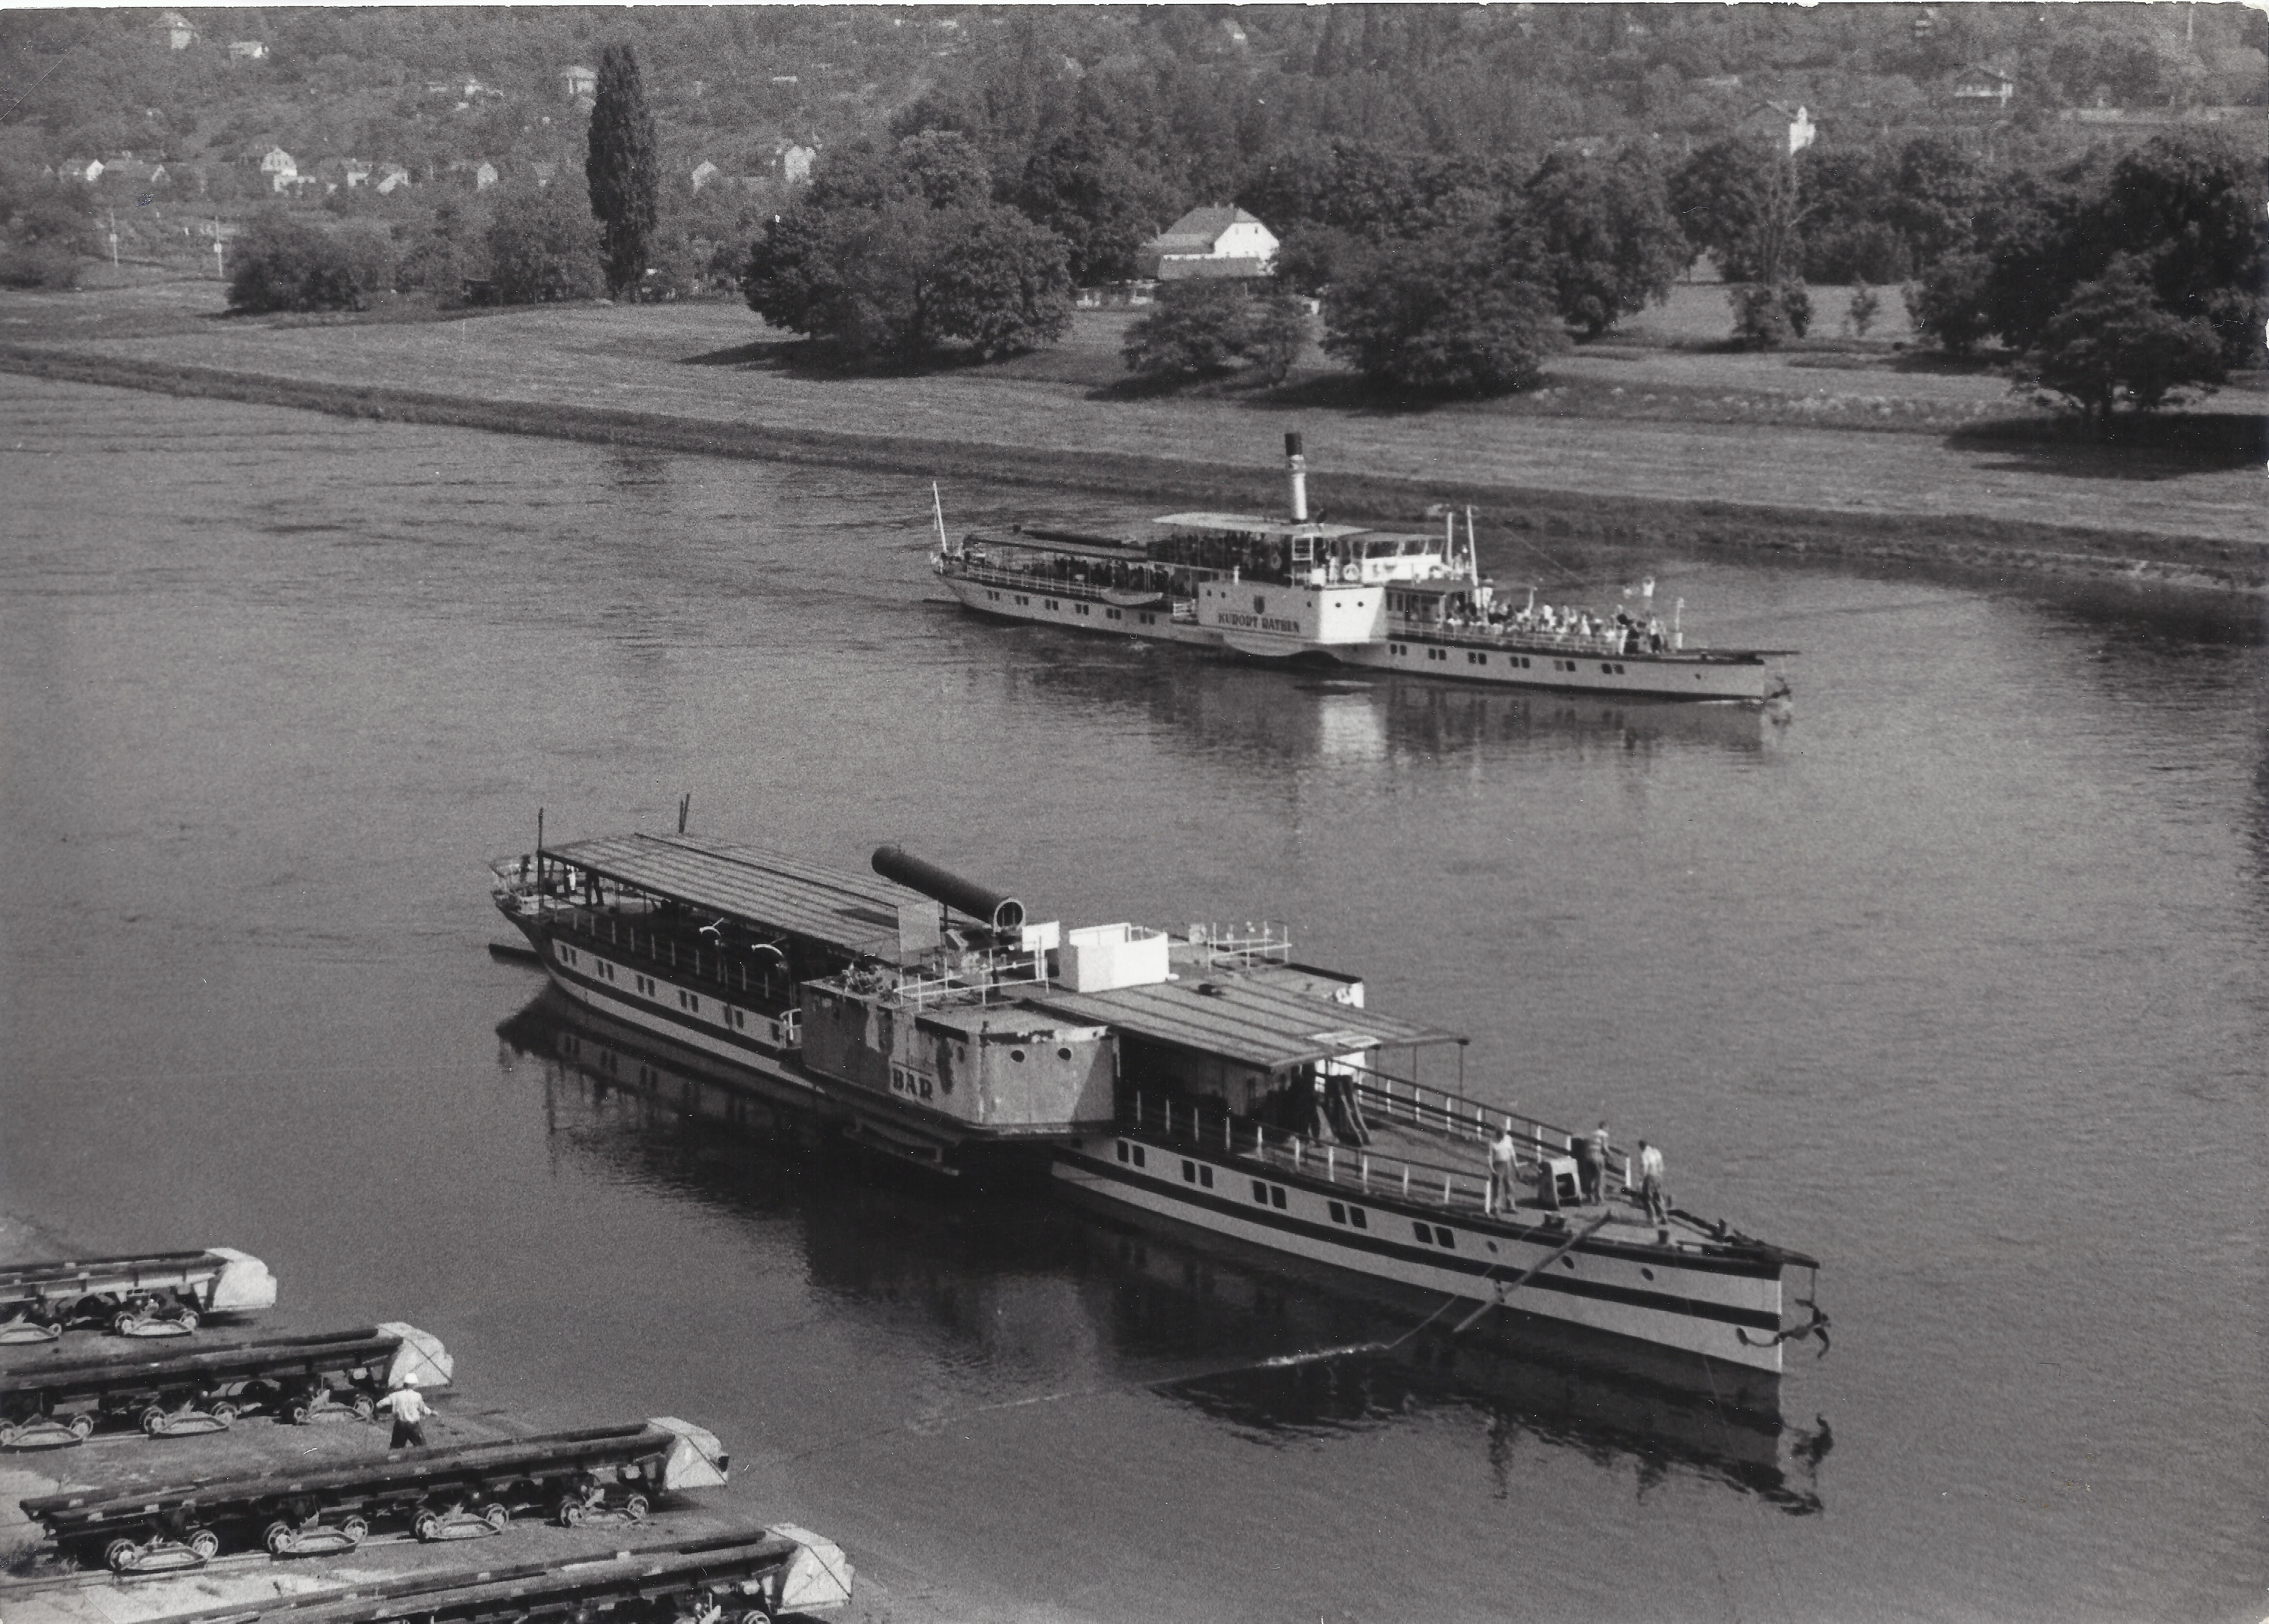 File:Dampfer Krippen auf der Elbe.jpg - Wikipedia